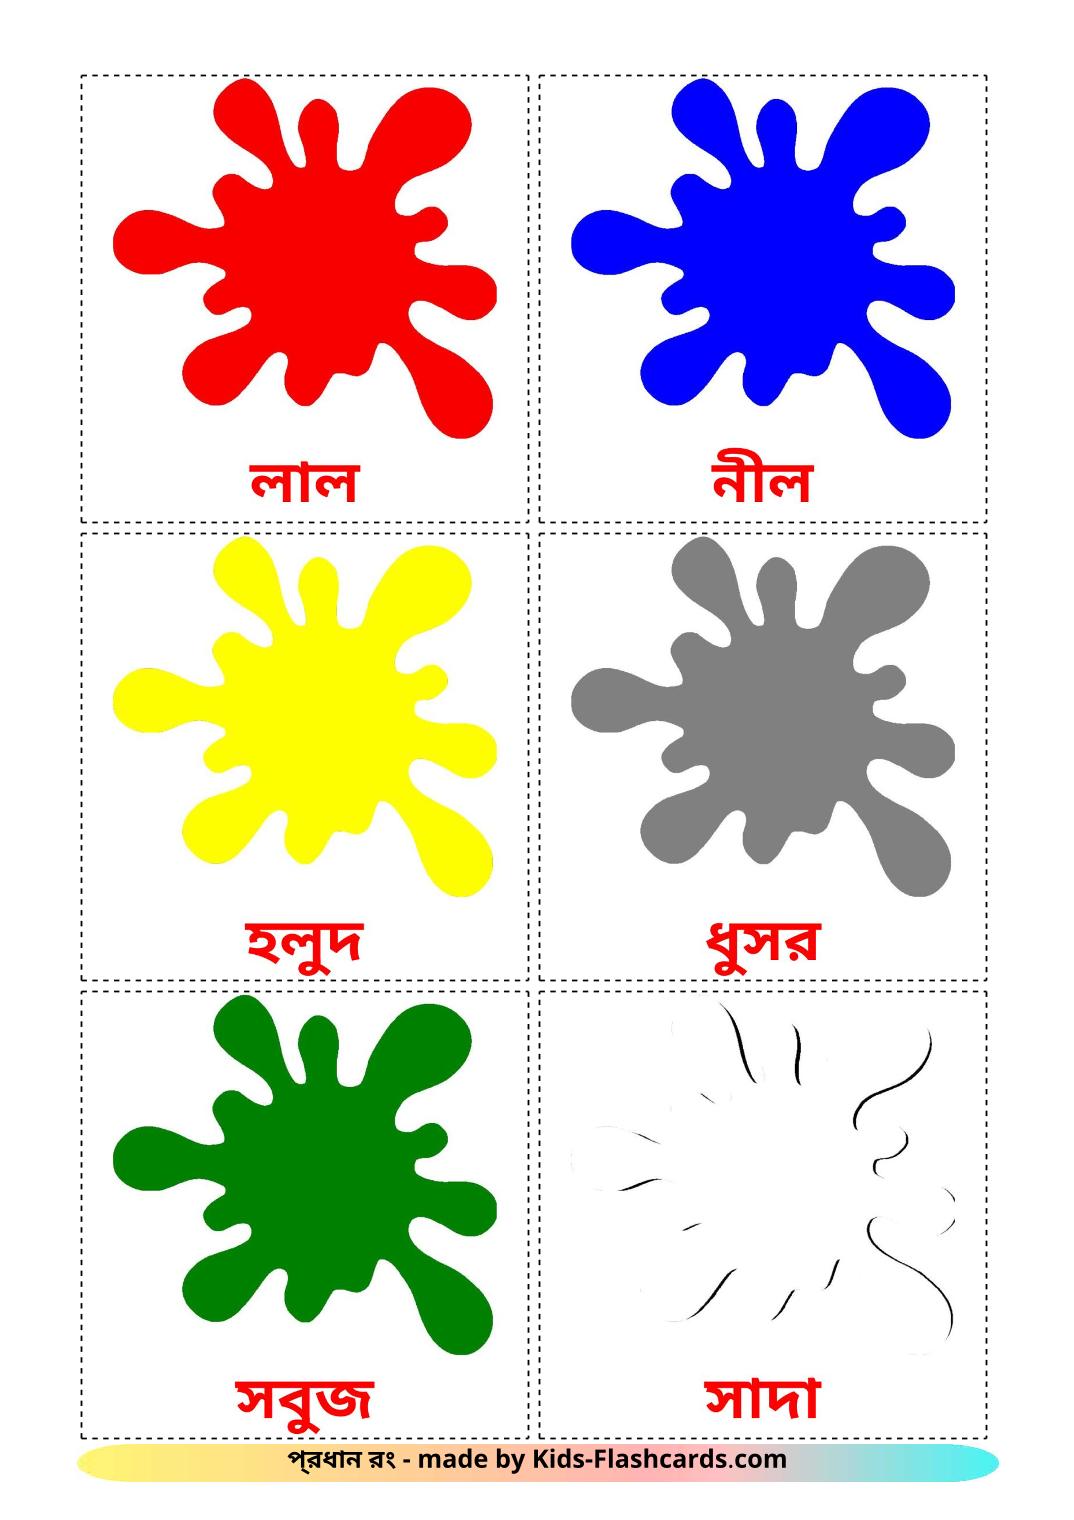 Colores - 12 fichas de bengalí para imprimir gratis 